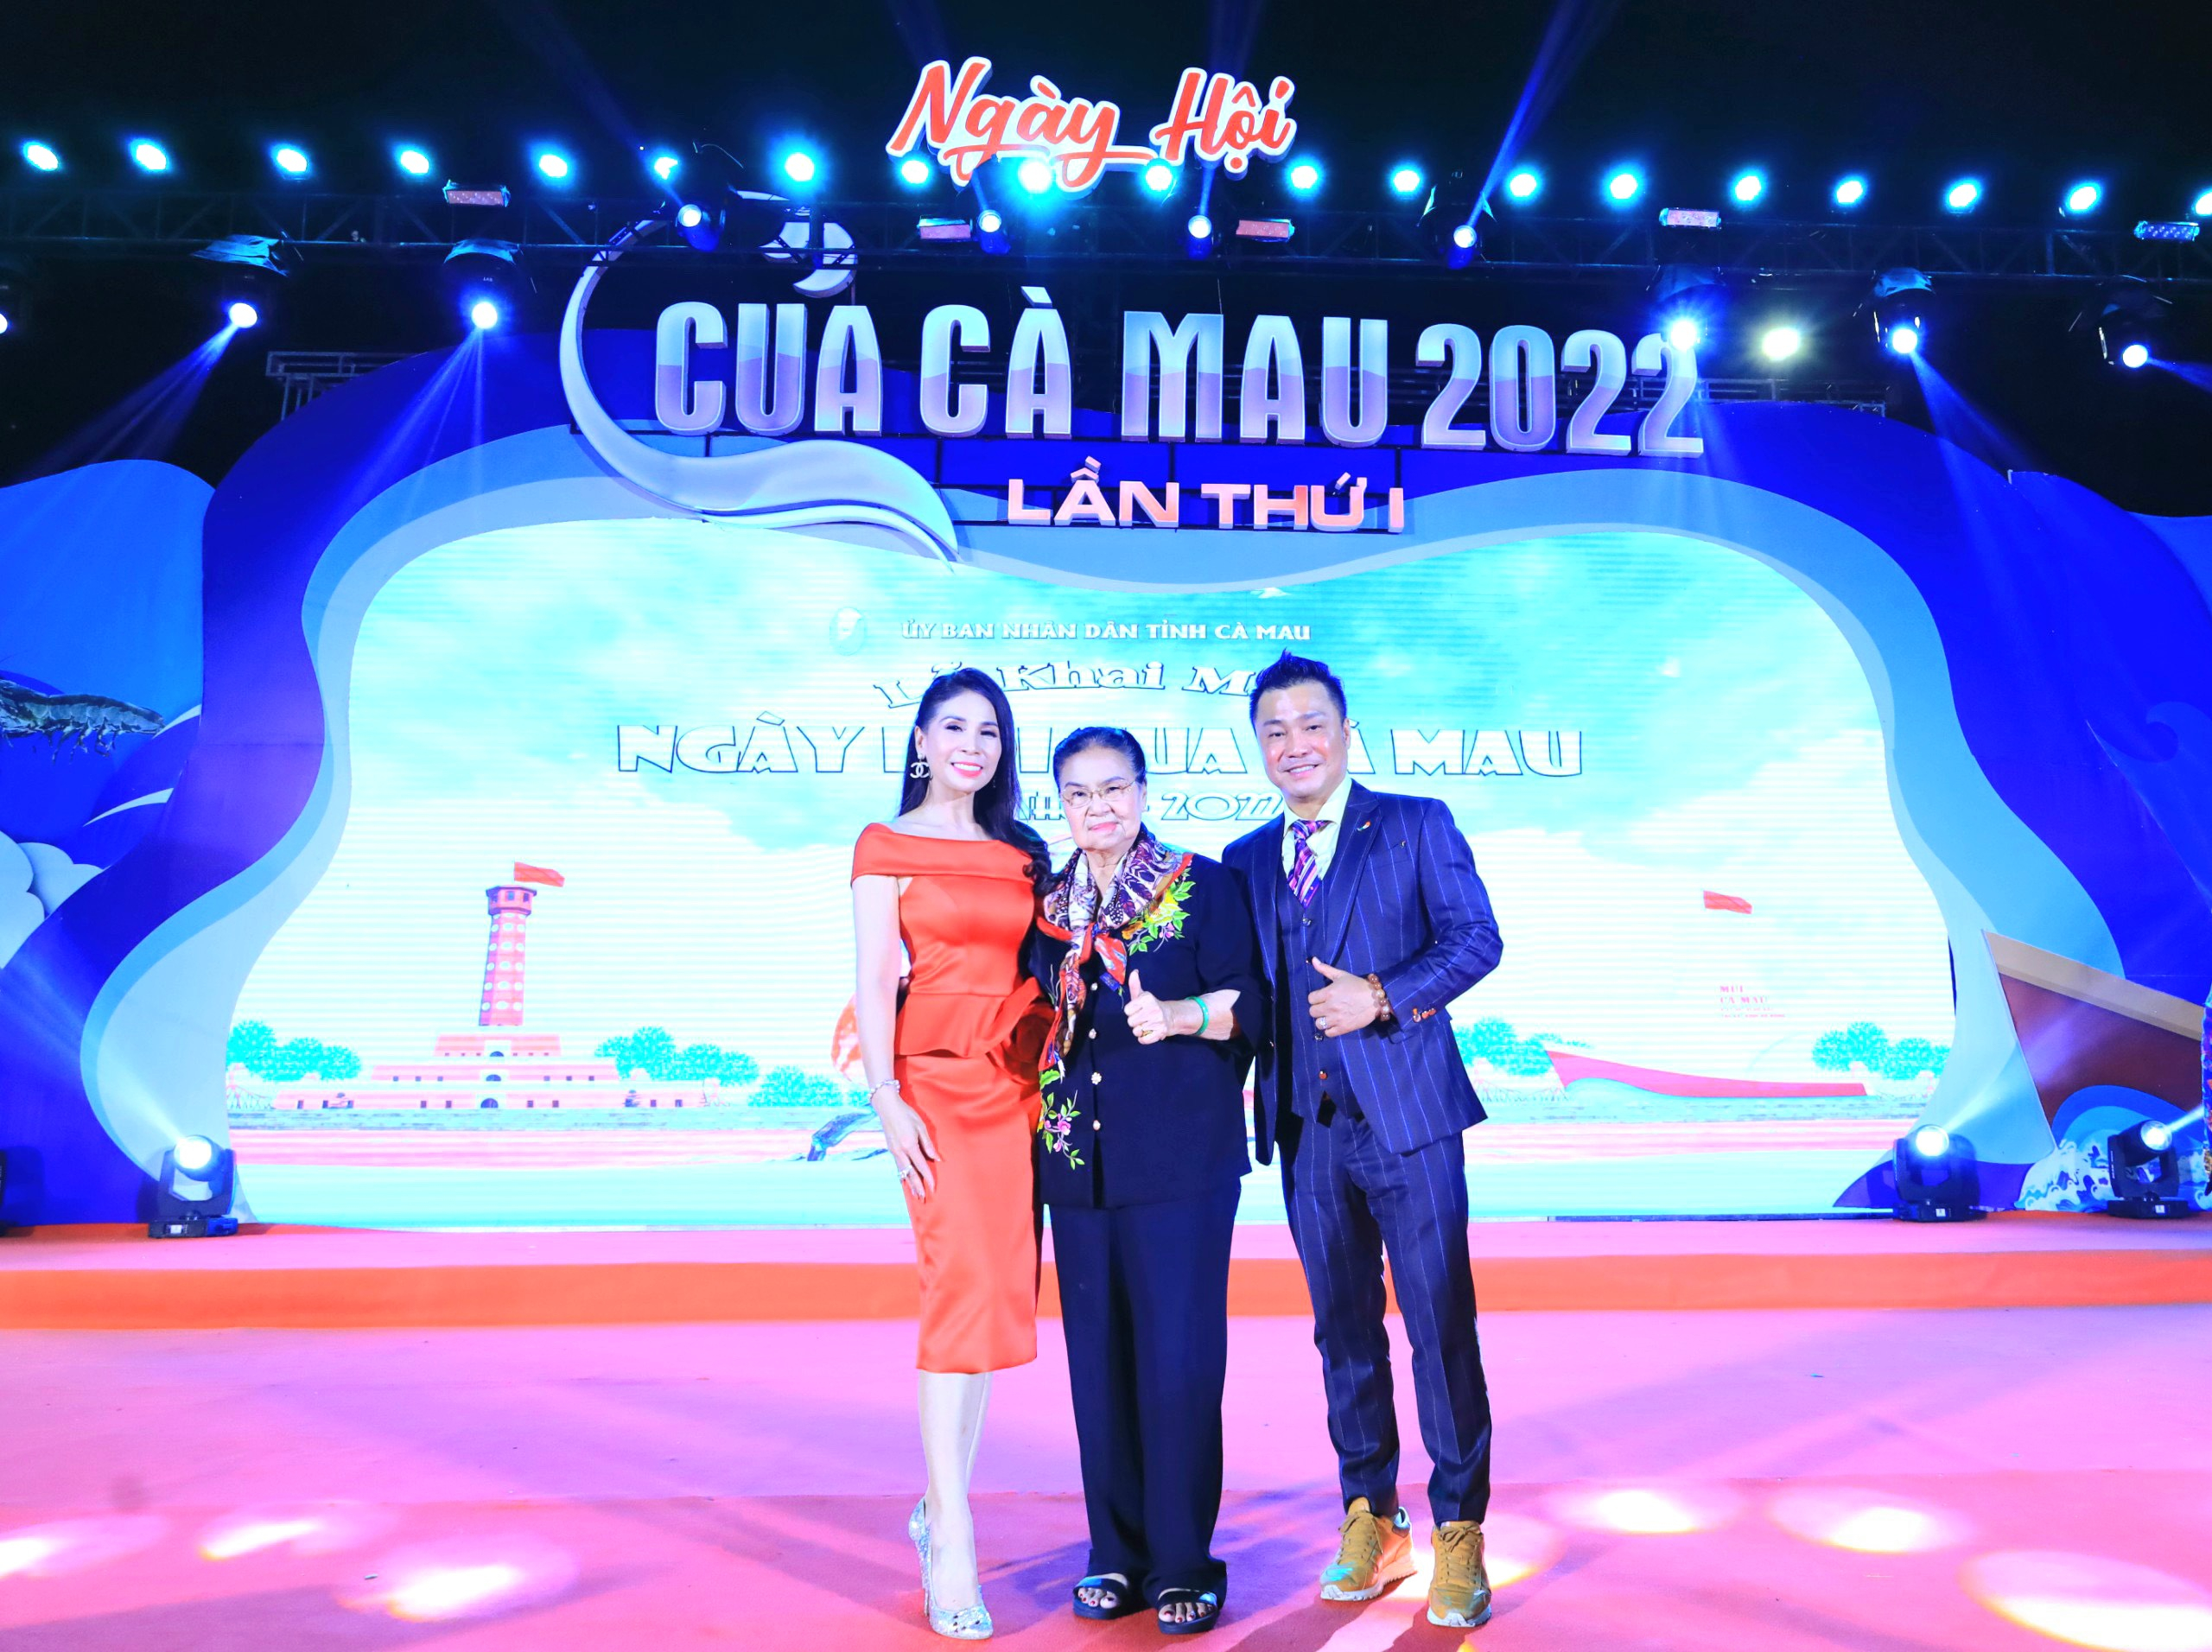 Gia đình diễn viên, ca sĩ Lý Hùng và Lý Hương cùng nhau tham dự Ngày hội Cua Cà Mau năm 2022.